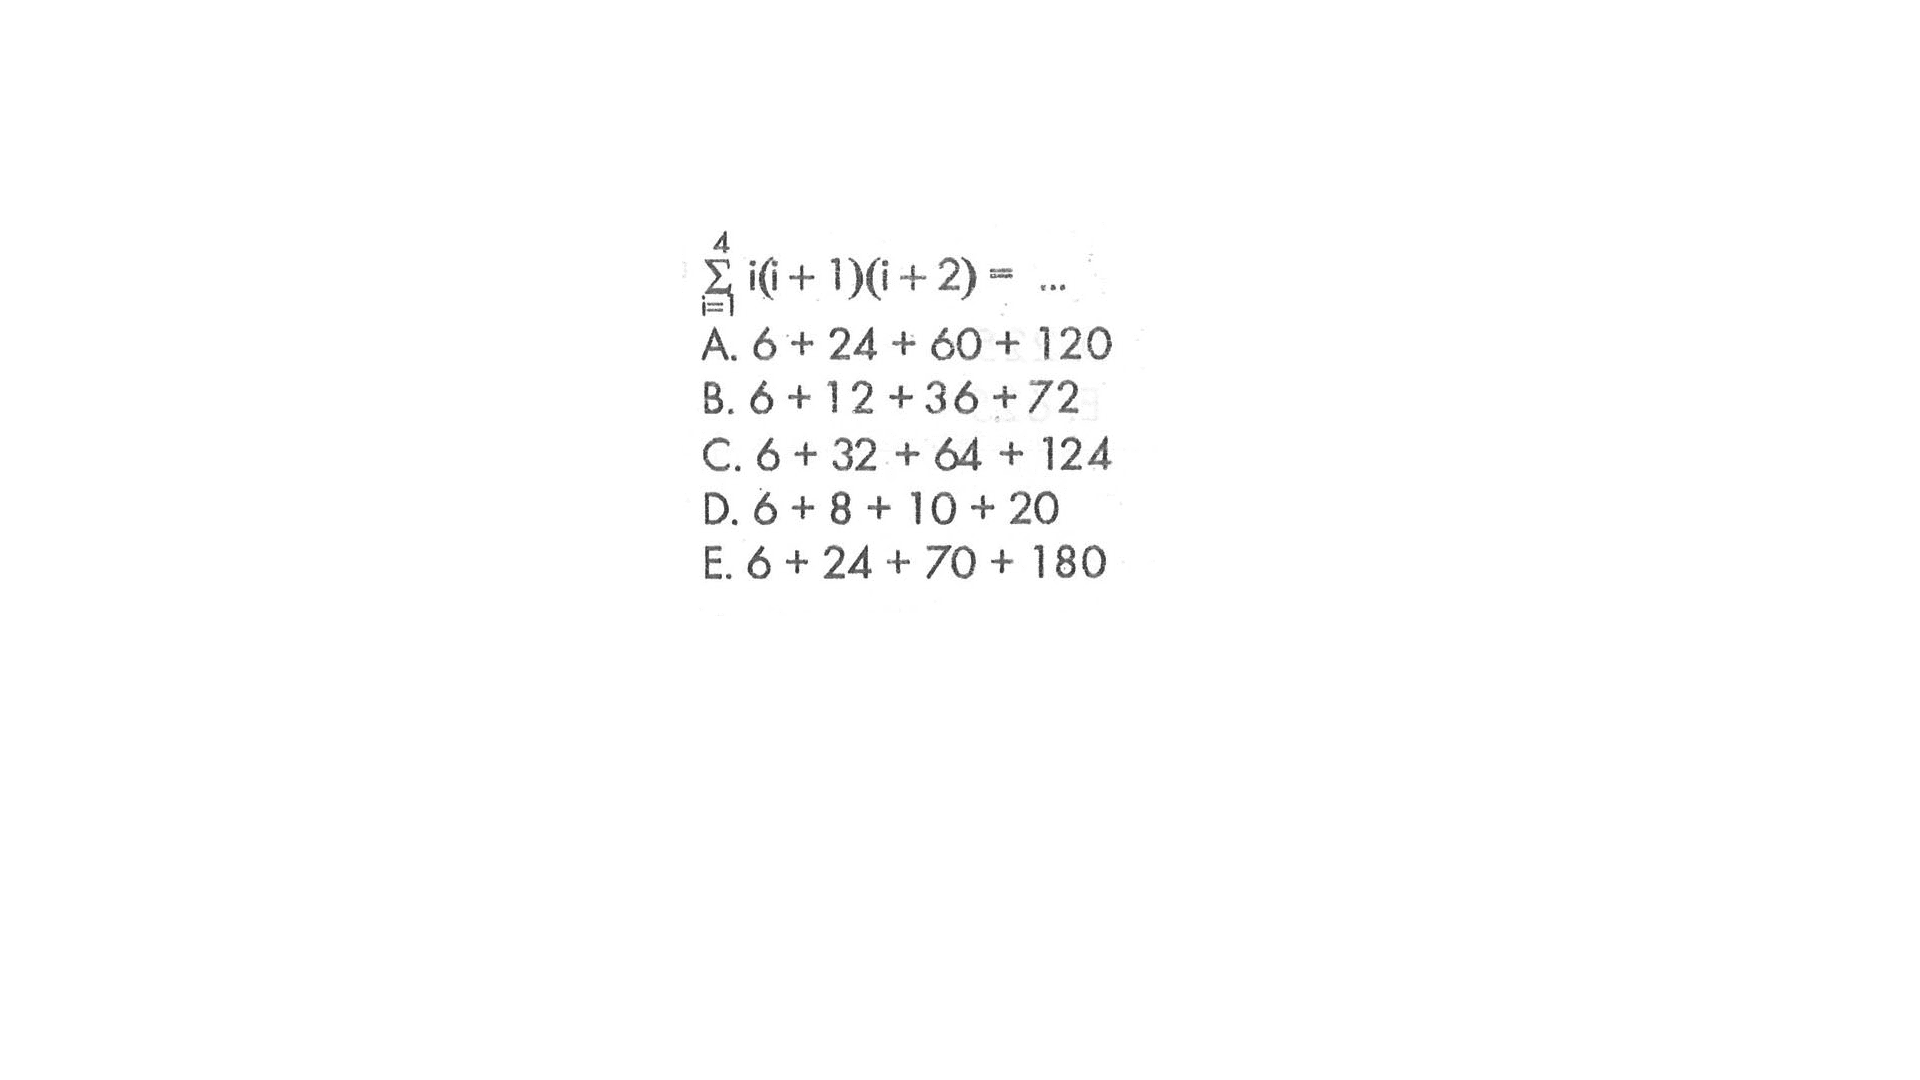 sigma i=1 4 i(i+1)(i+2) = 